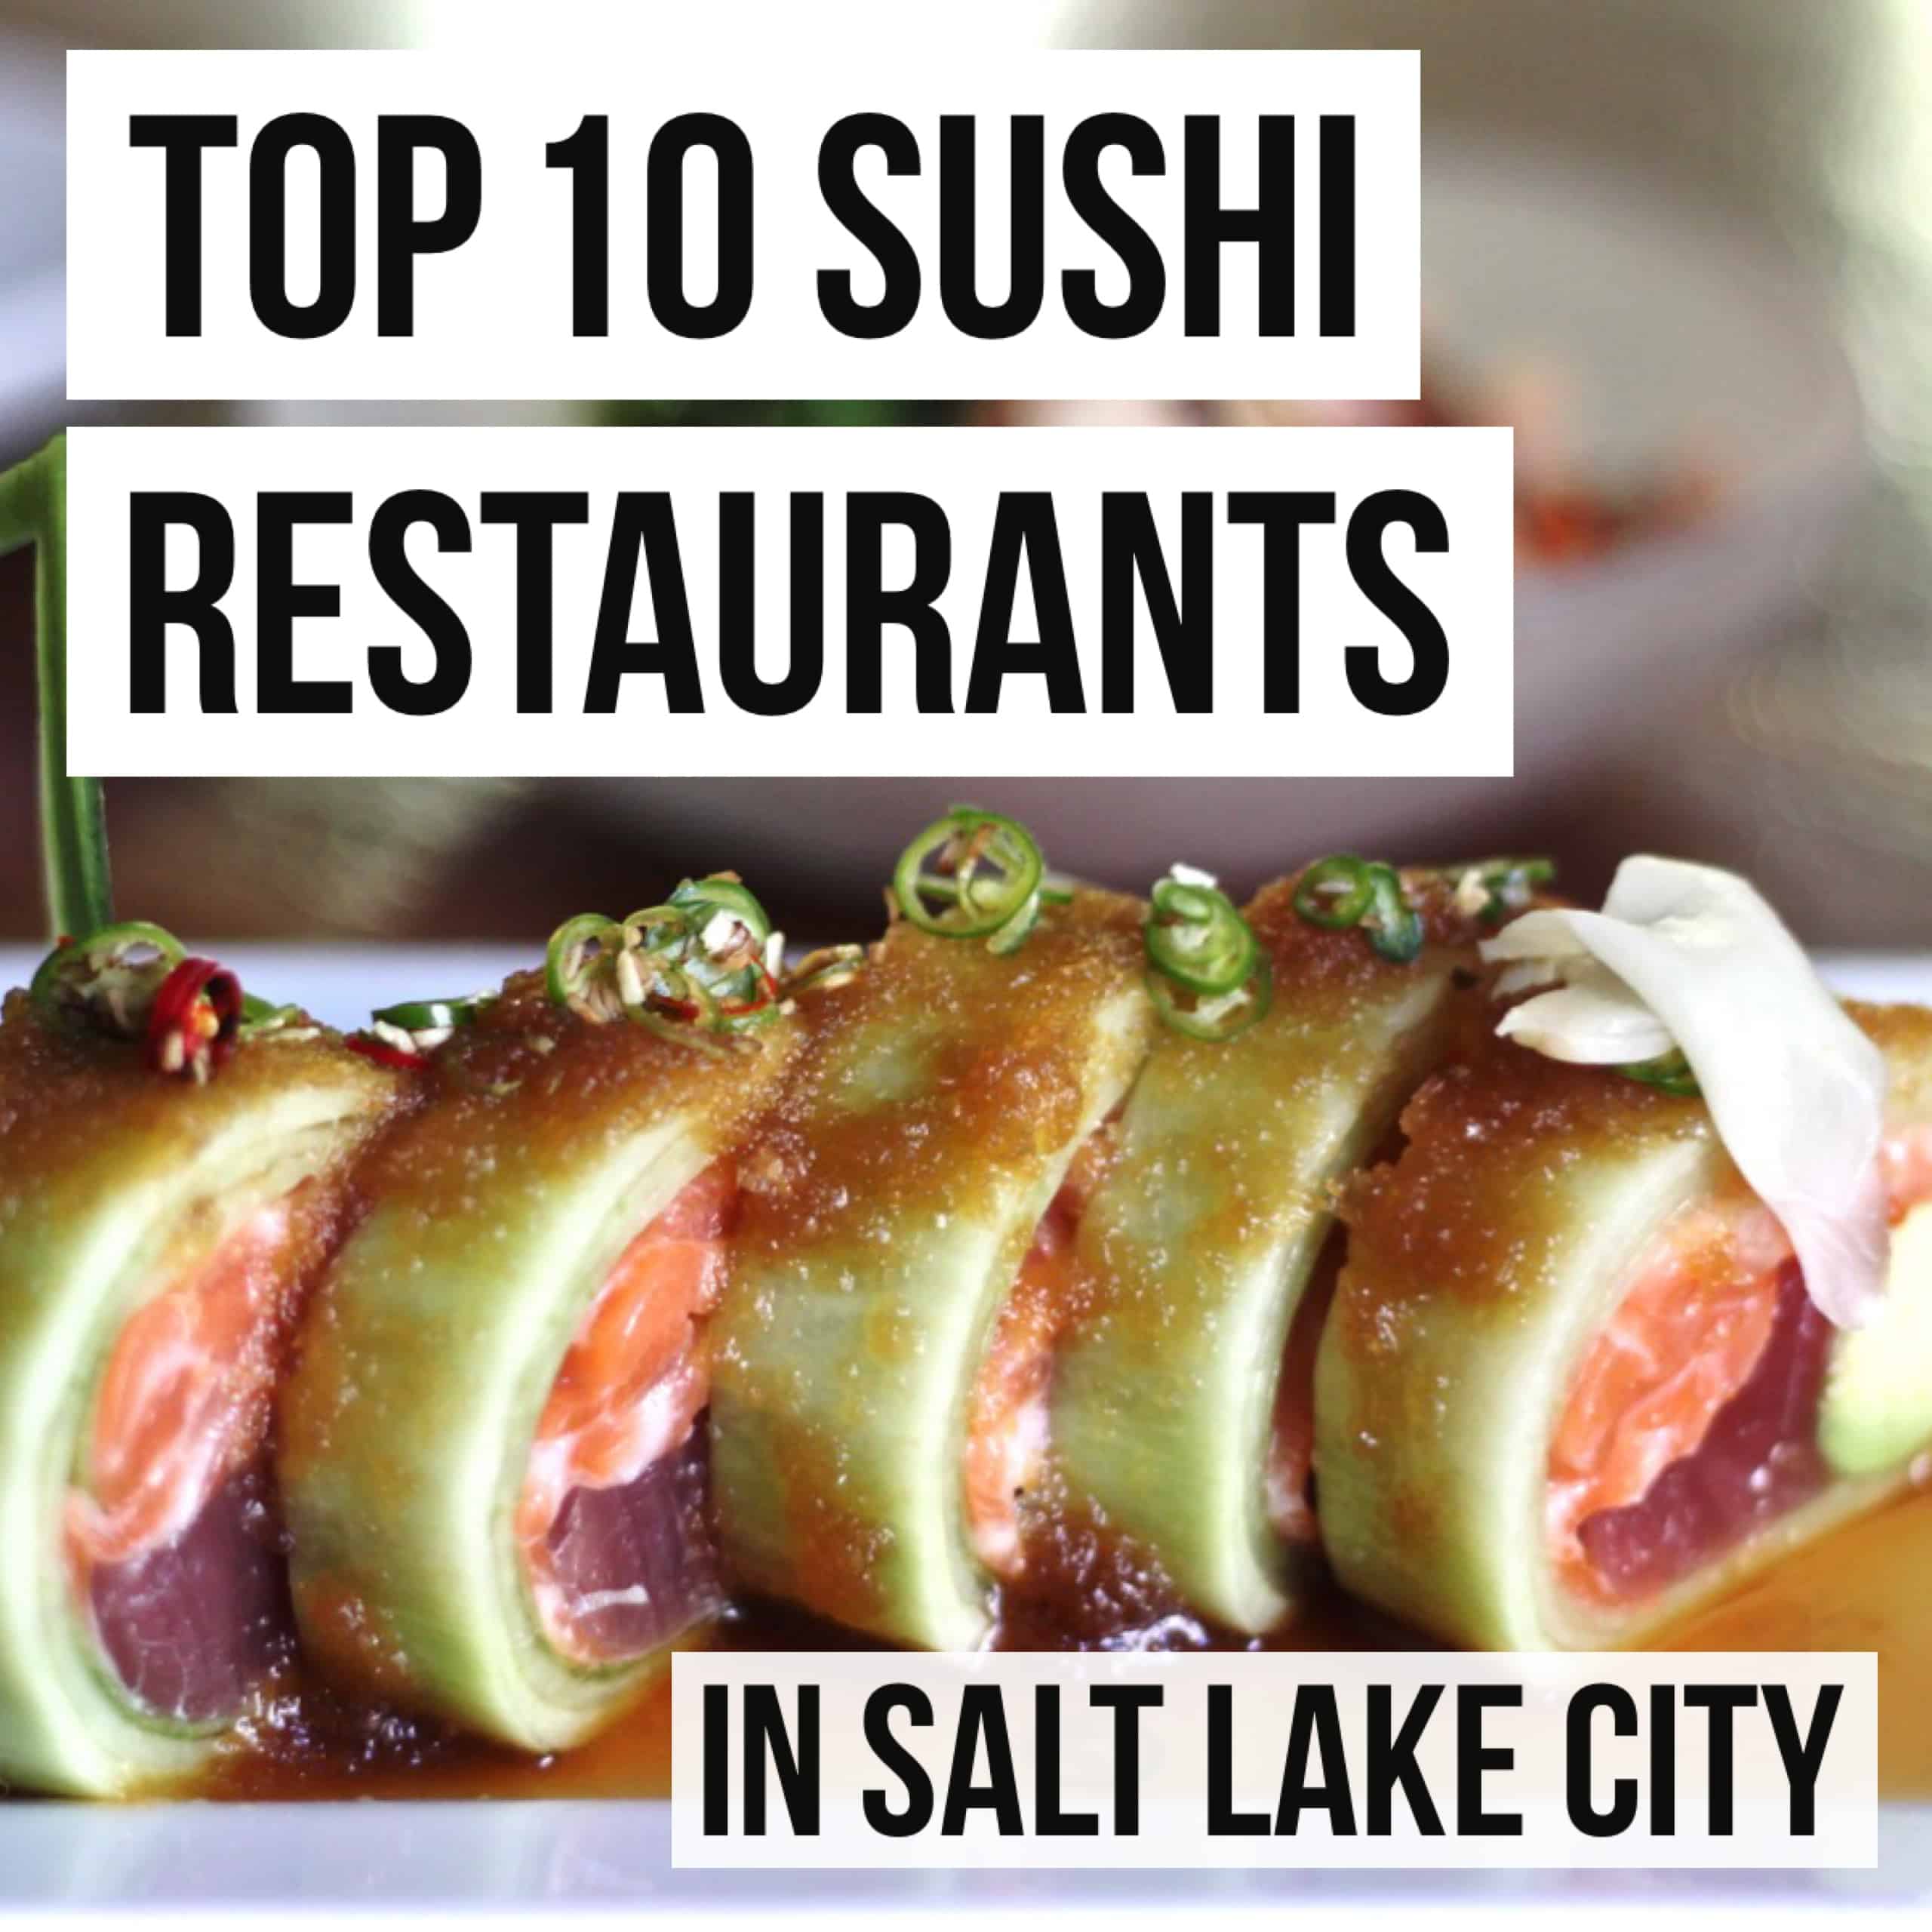 Top 10 Sushi Restaurants in Salt Lake City - Female Foodie